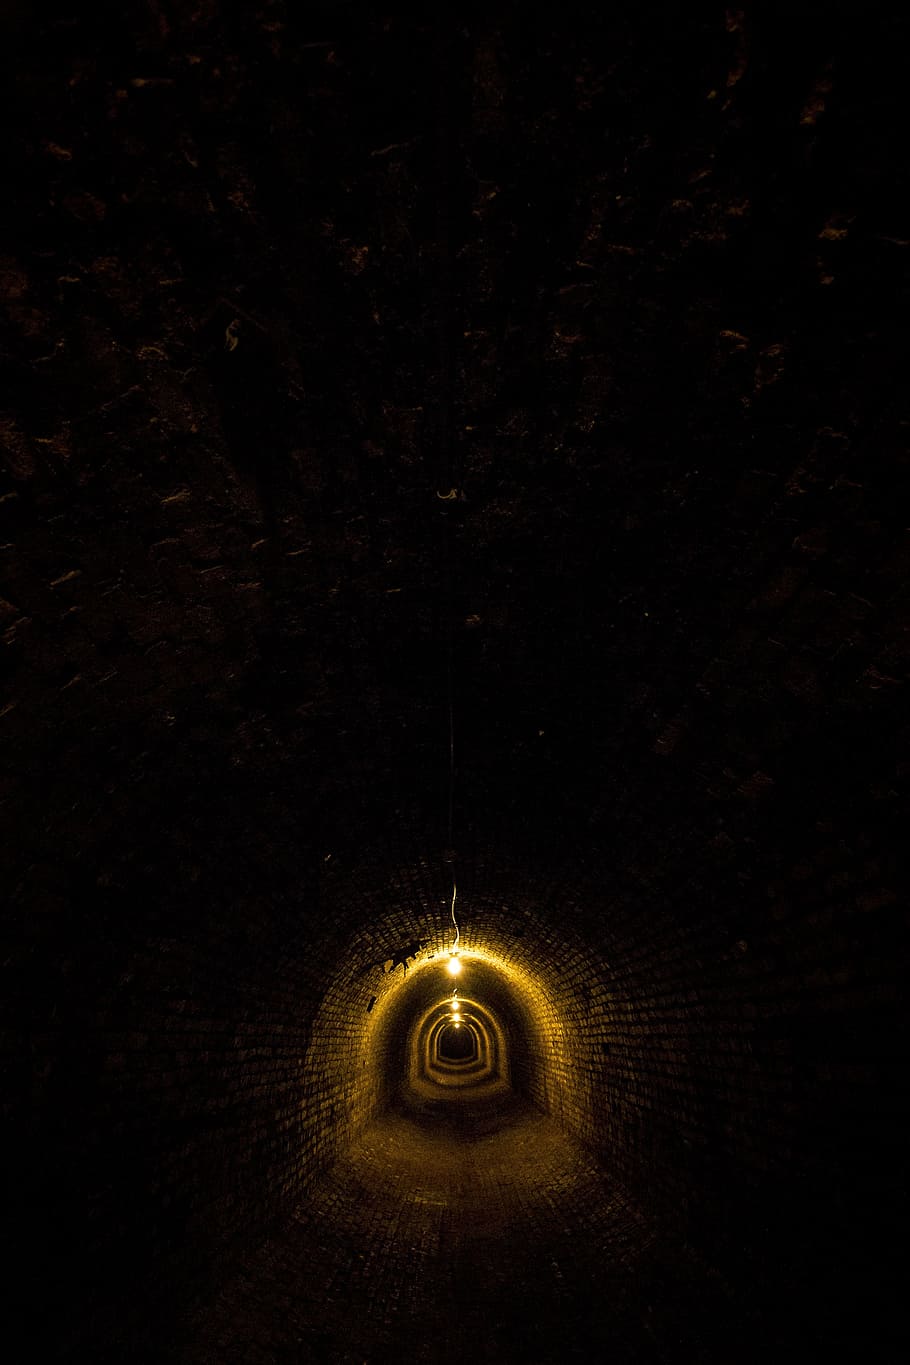 amarillo, lámpara, colgante, techo, manicomio, túnel, subterráneo, ladrillo, sombras, oscuro